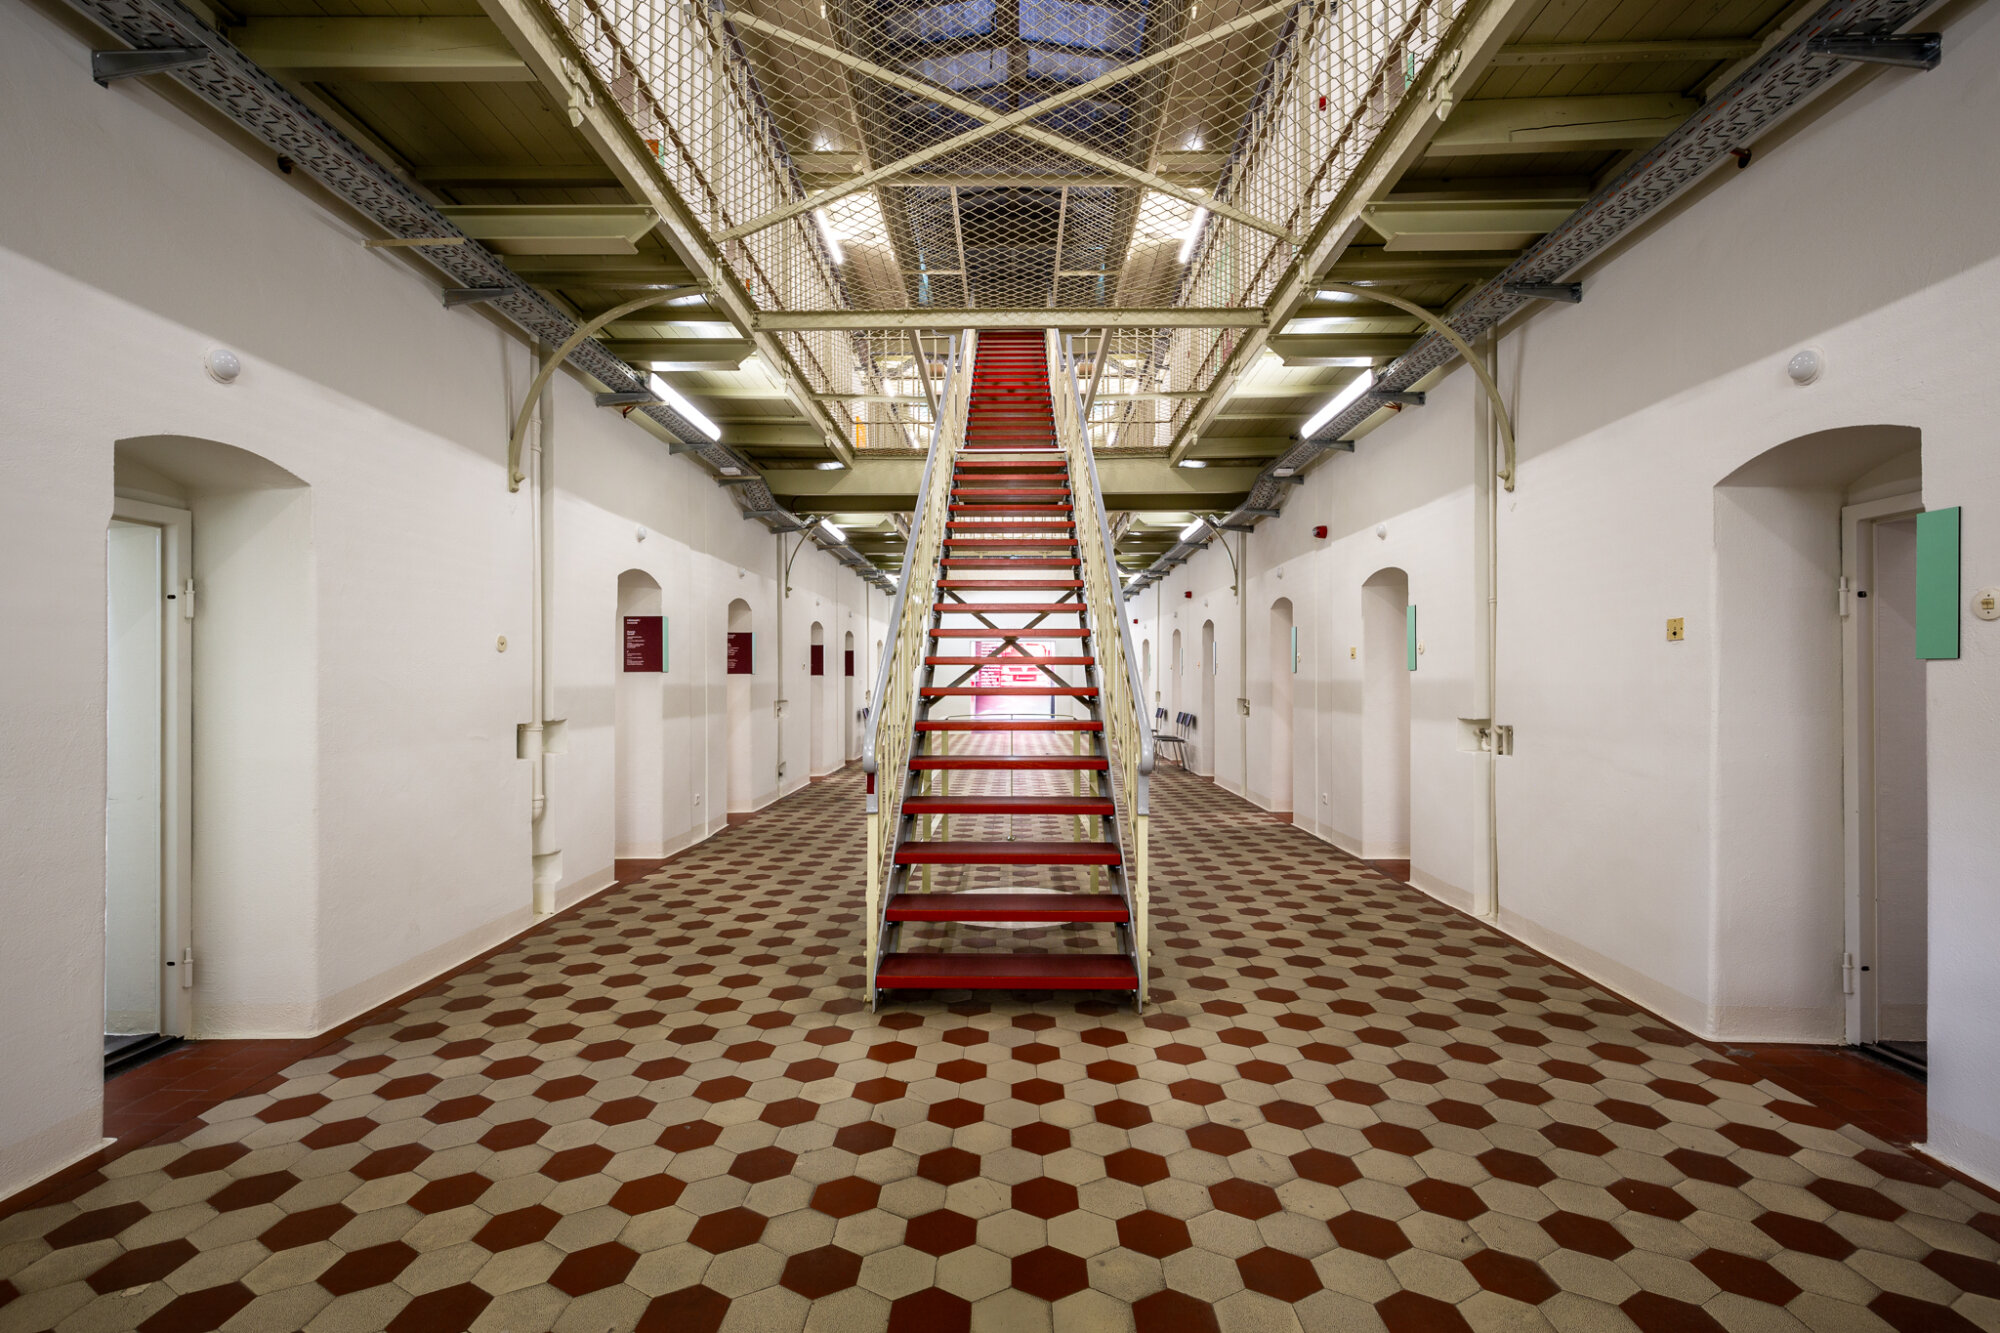 Die Hafthalle des früheren Hafttrakts B: In den einstigen Zellen werden Haftschicksale aus der Zeit des Häftlingsfreikaufs, der Stasi-Untersuchungshaft und der sowjetischen Geheimpolizei NKWD/MGB erzählt, aber auch aus der Zeit des Nationalsozialismus. 